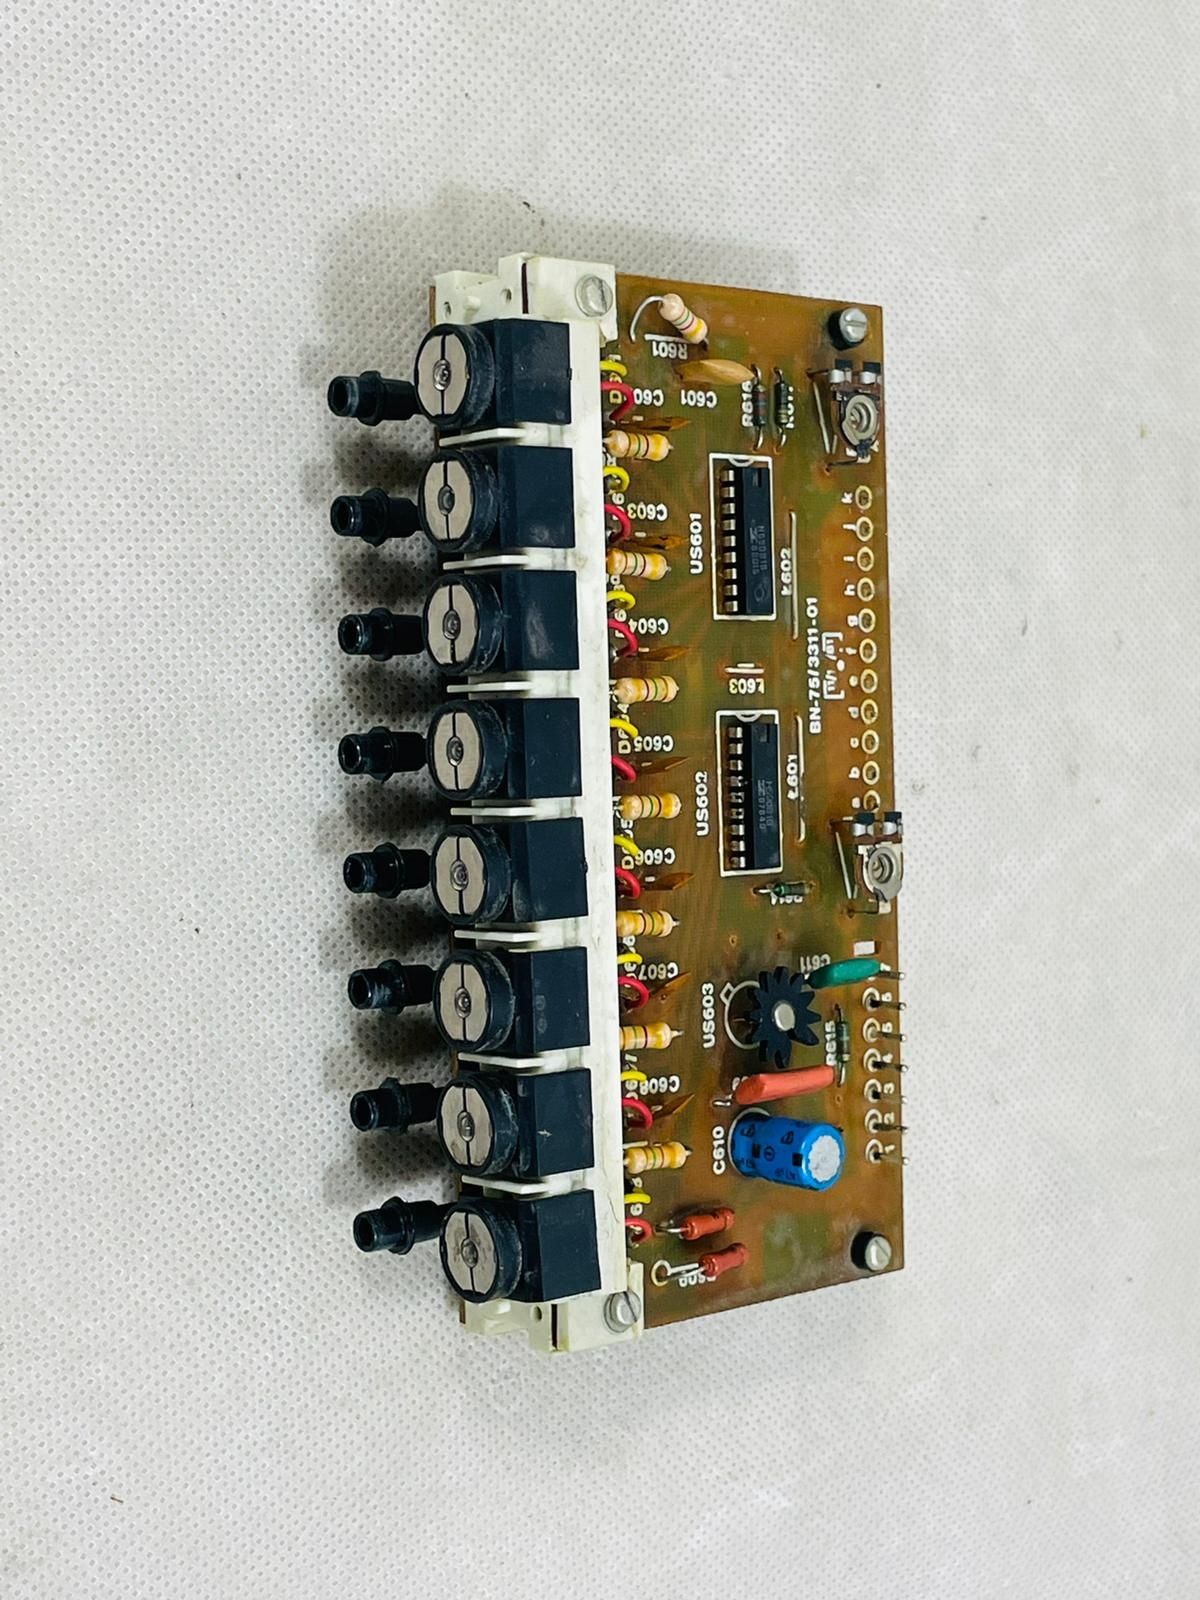 Programator Radmor 5102t 5102te stroiki 1981r